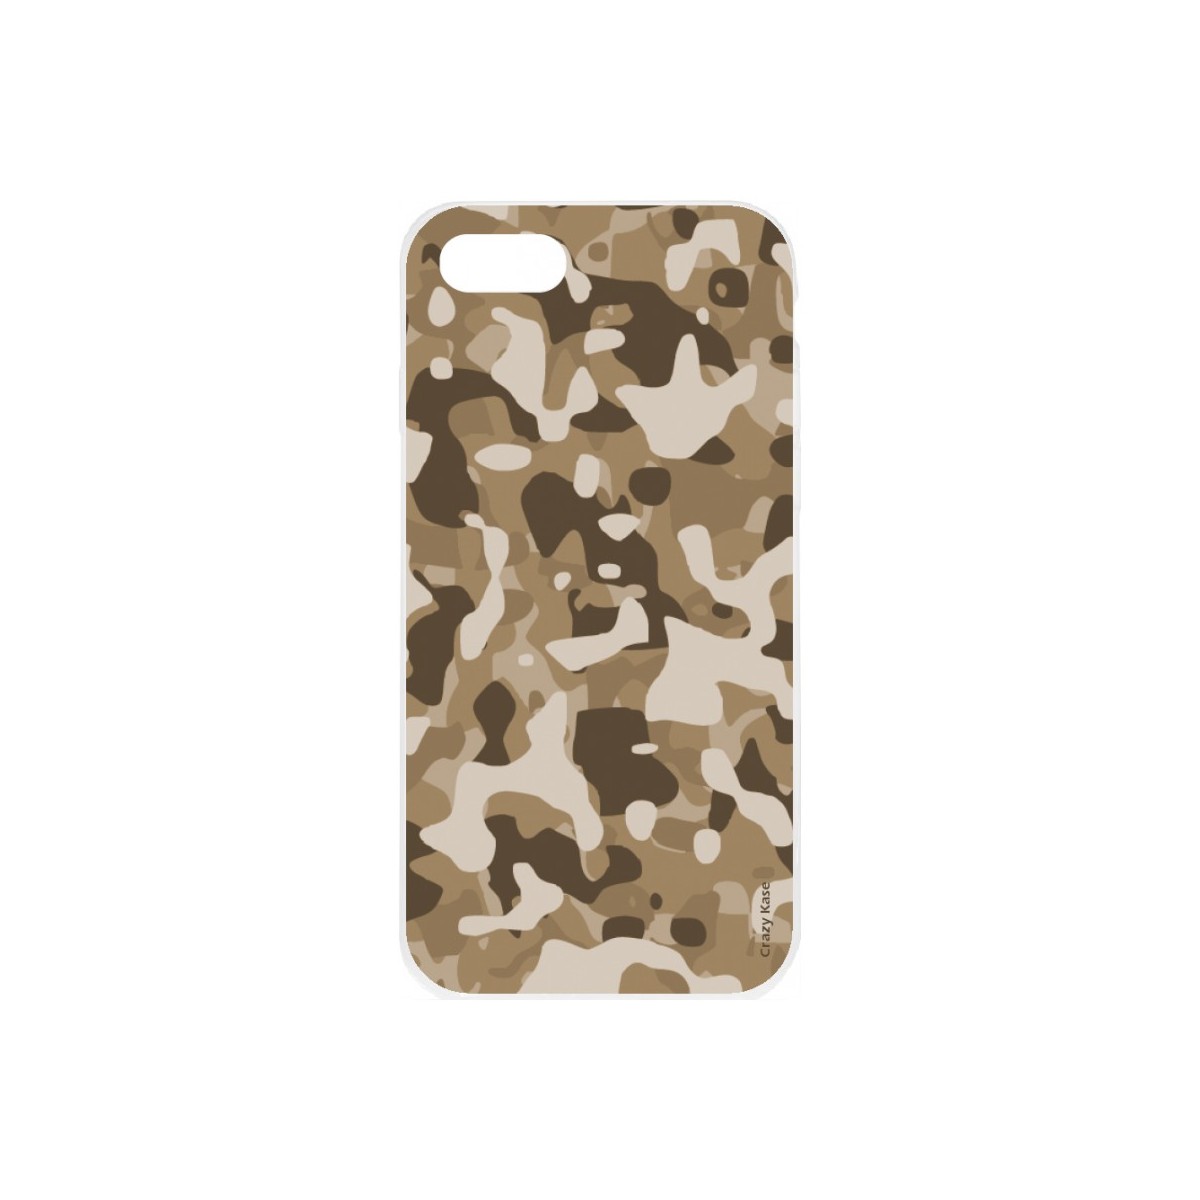 Coque iPhone SE (2020) souple Camouflage militaire désert Crazy Kase